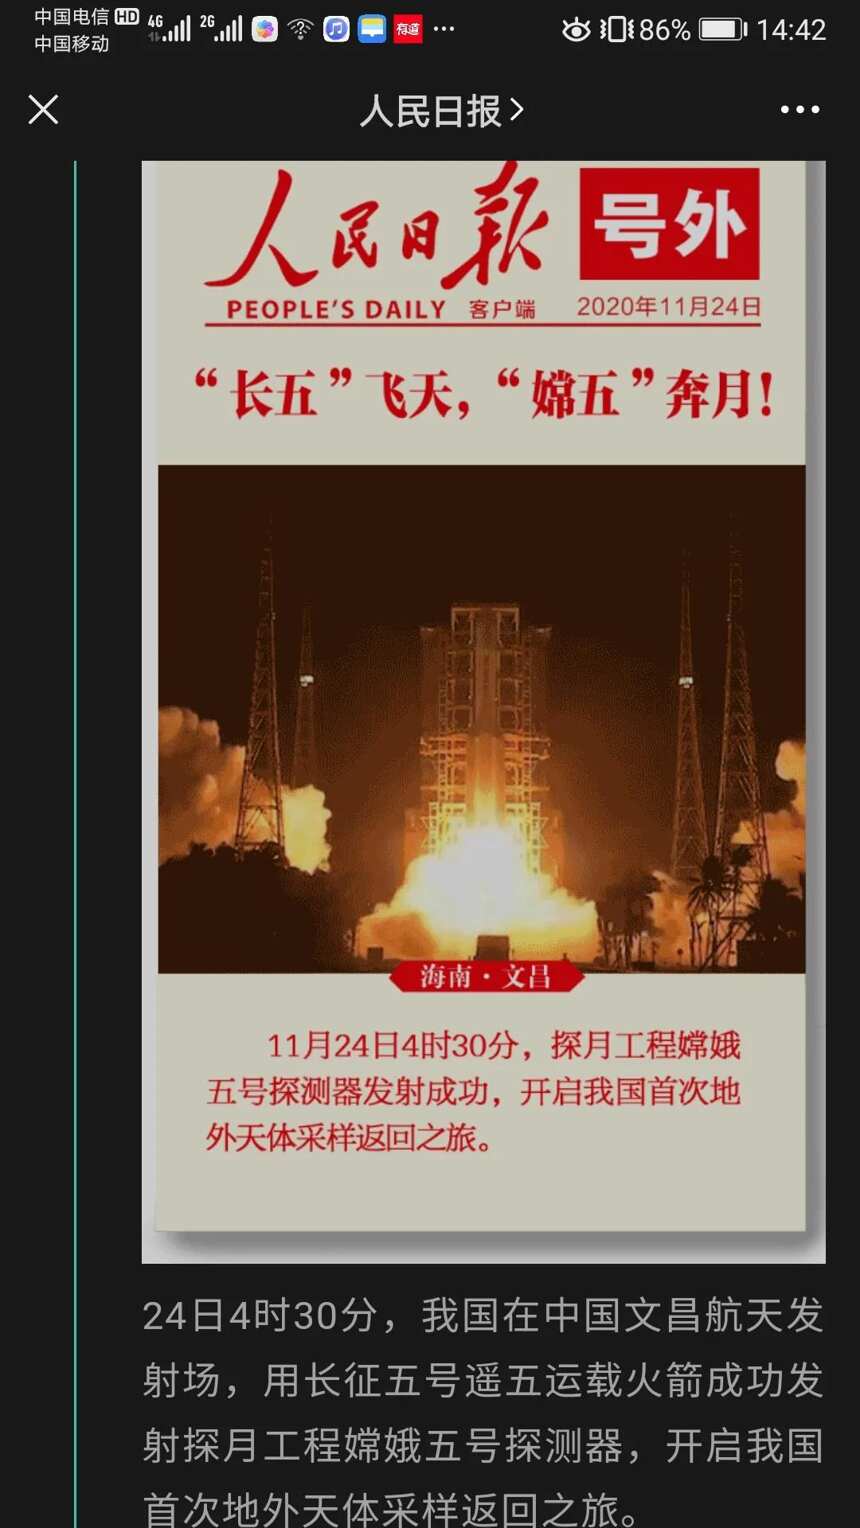 中国航天事业合作伙伴长城天赋恭贺嫦娥五号发射成功